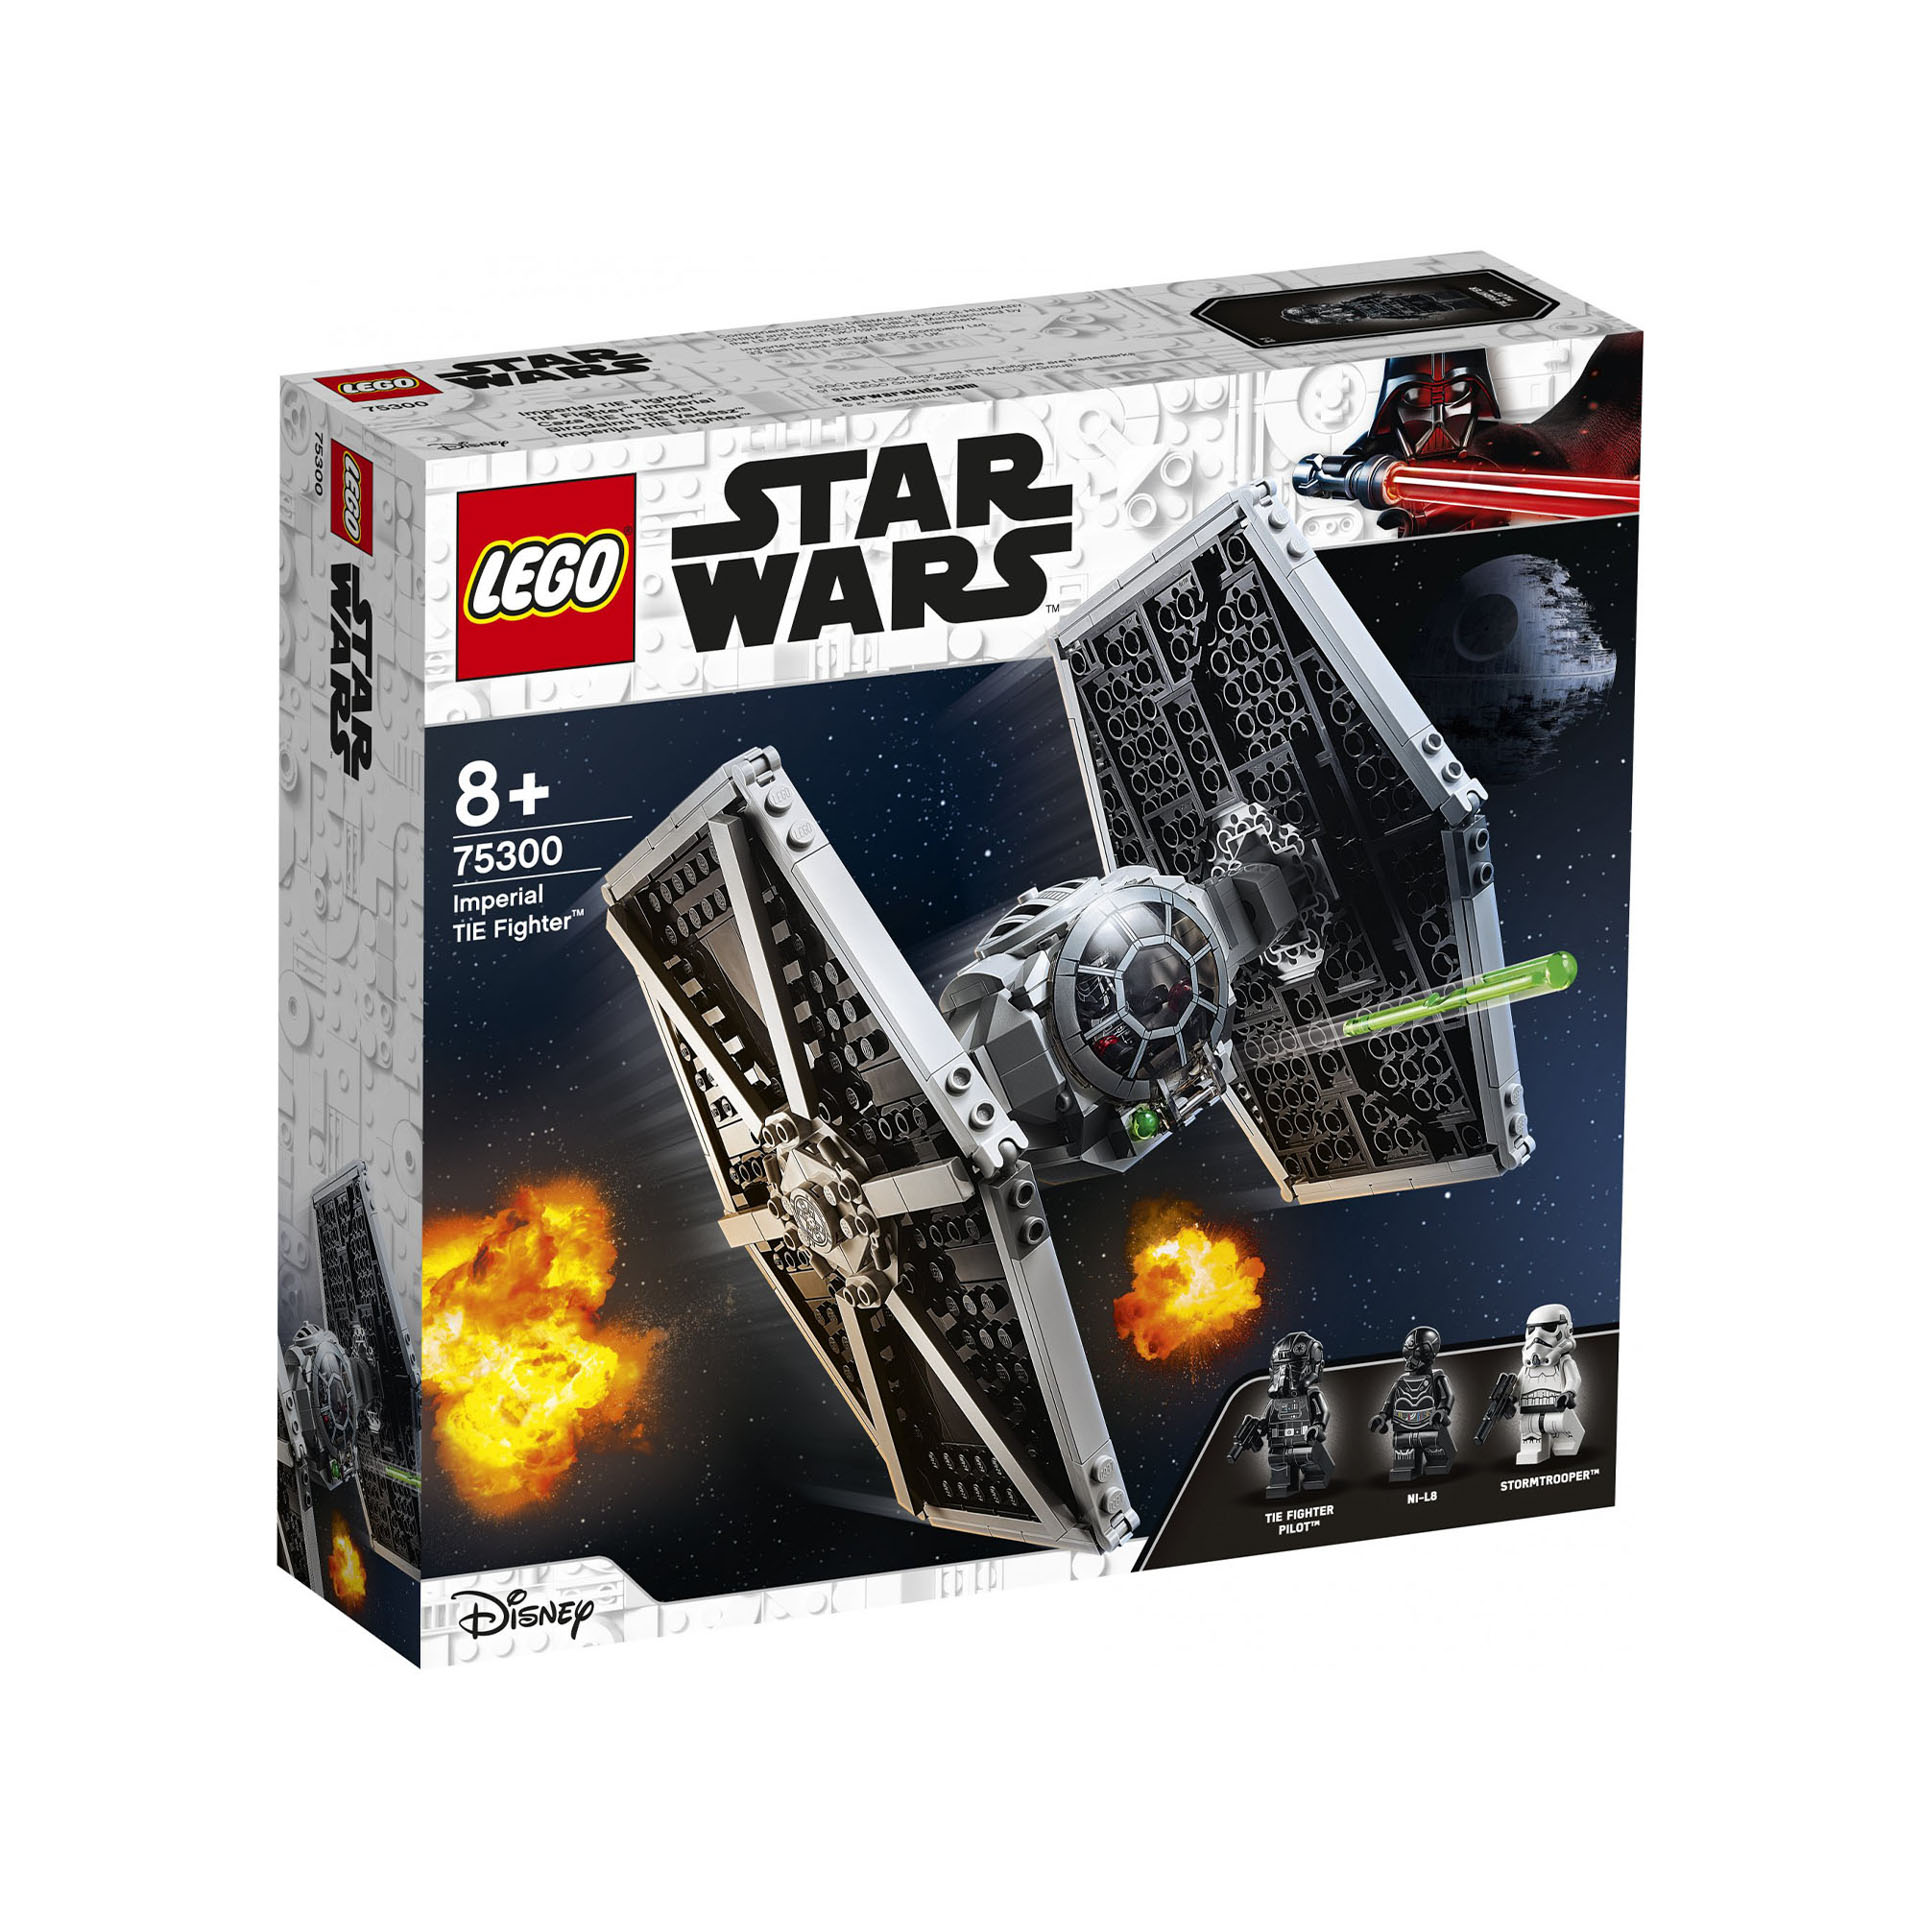 LEGO Star Wars Imperial TIE Fighter, Giocattolo con Stormtrooper e Minifigure de 75300, , large